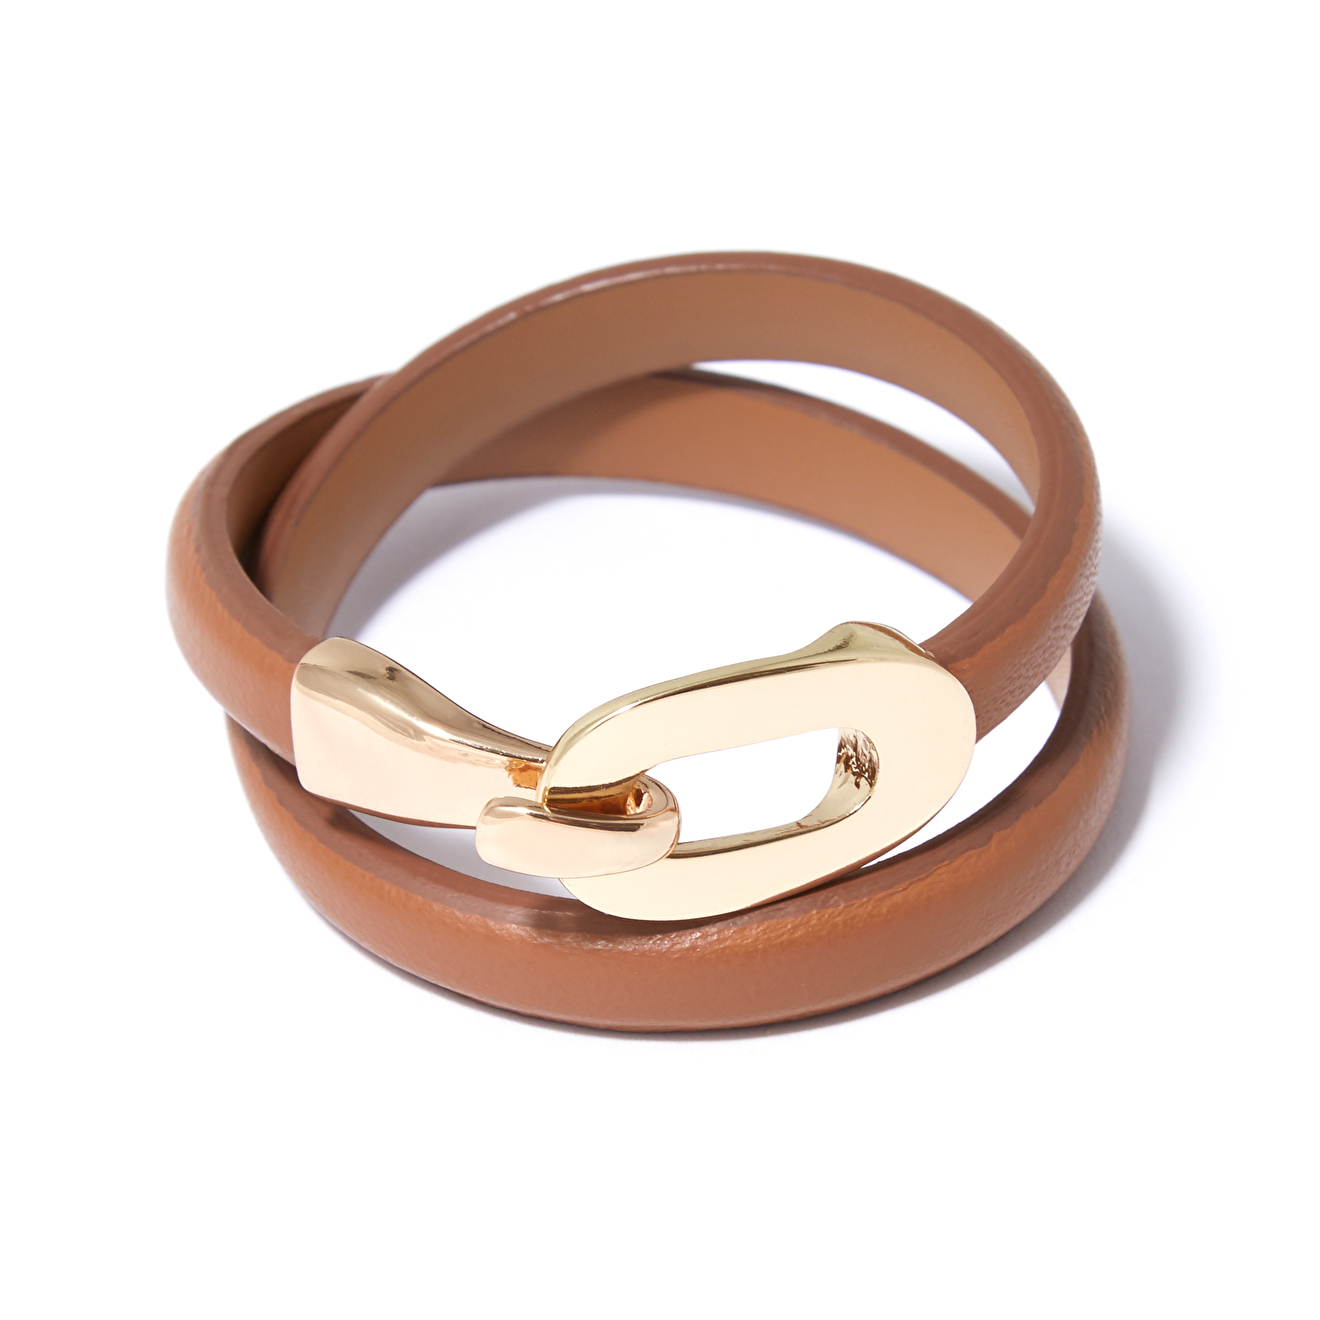 Tannum Коричневый кожаный браслет с пряжкой tannum розовый кожаный браслет с золотистым квадратом